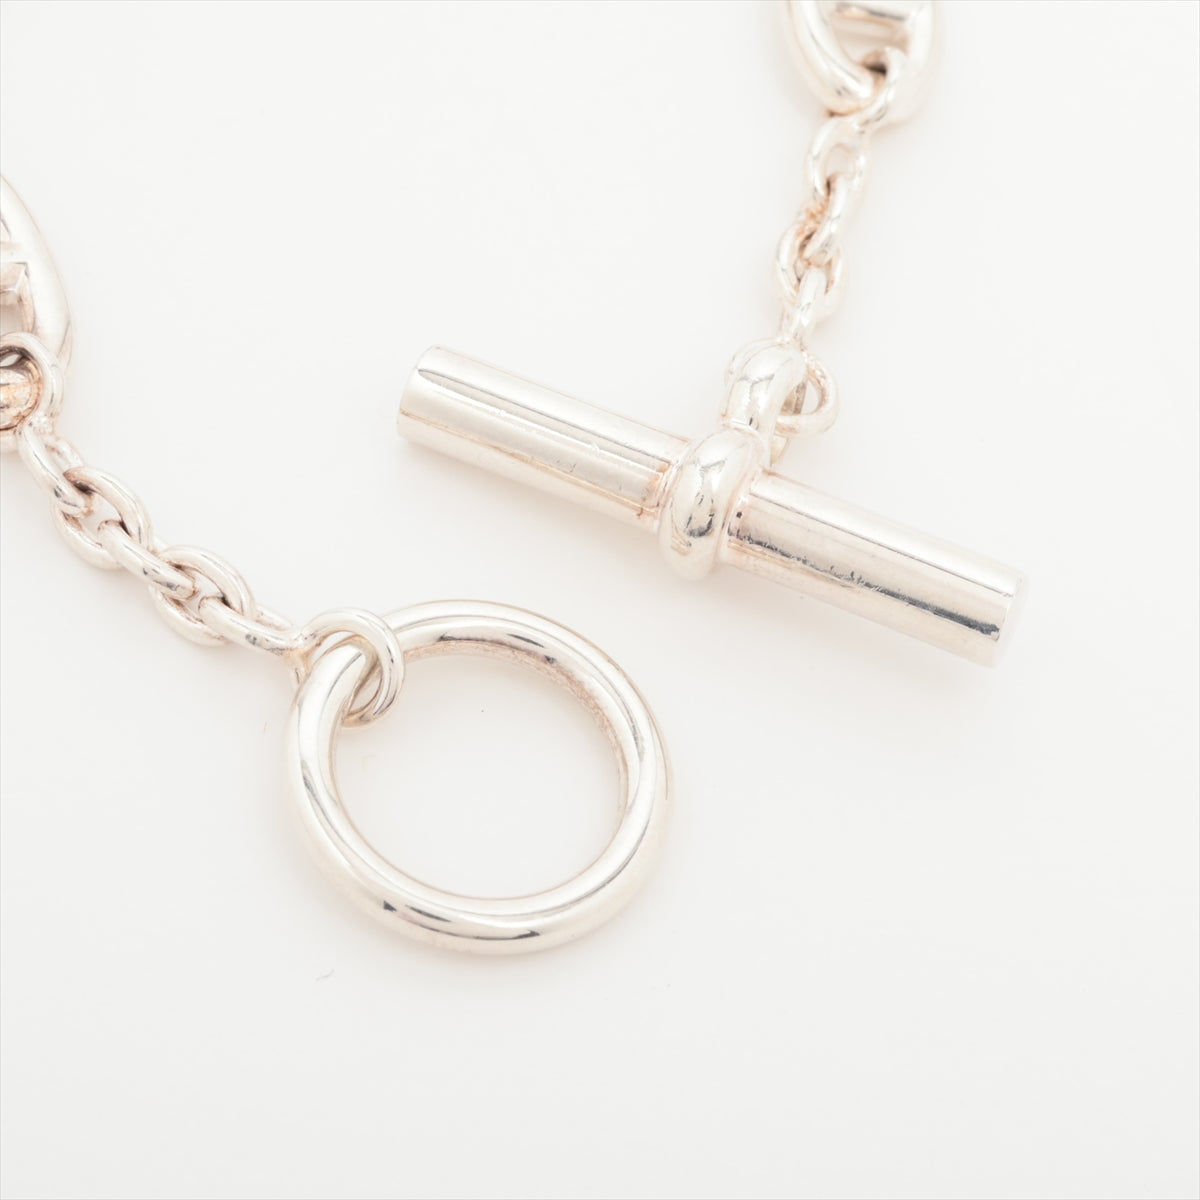 Hermès Chaîne d'Ancre Farandole Bracelet SH 925 25.0g Silver